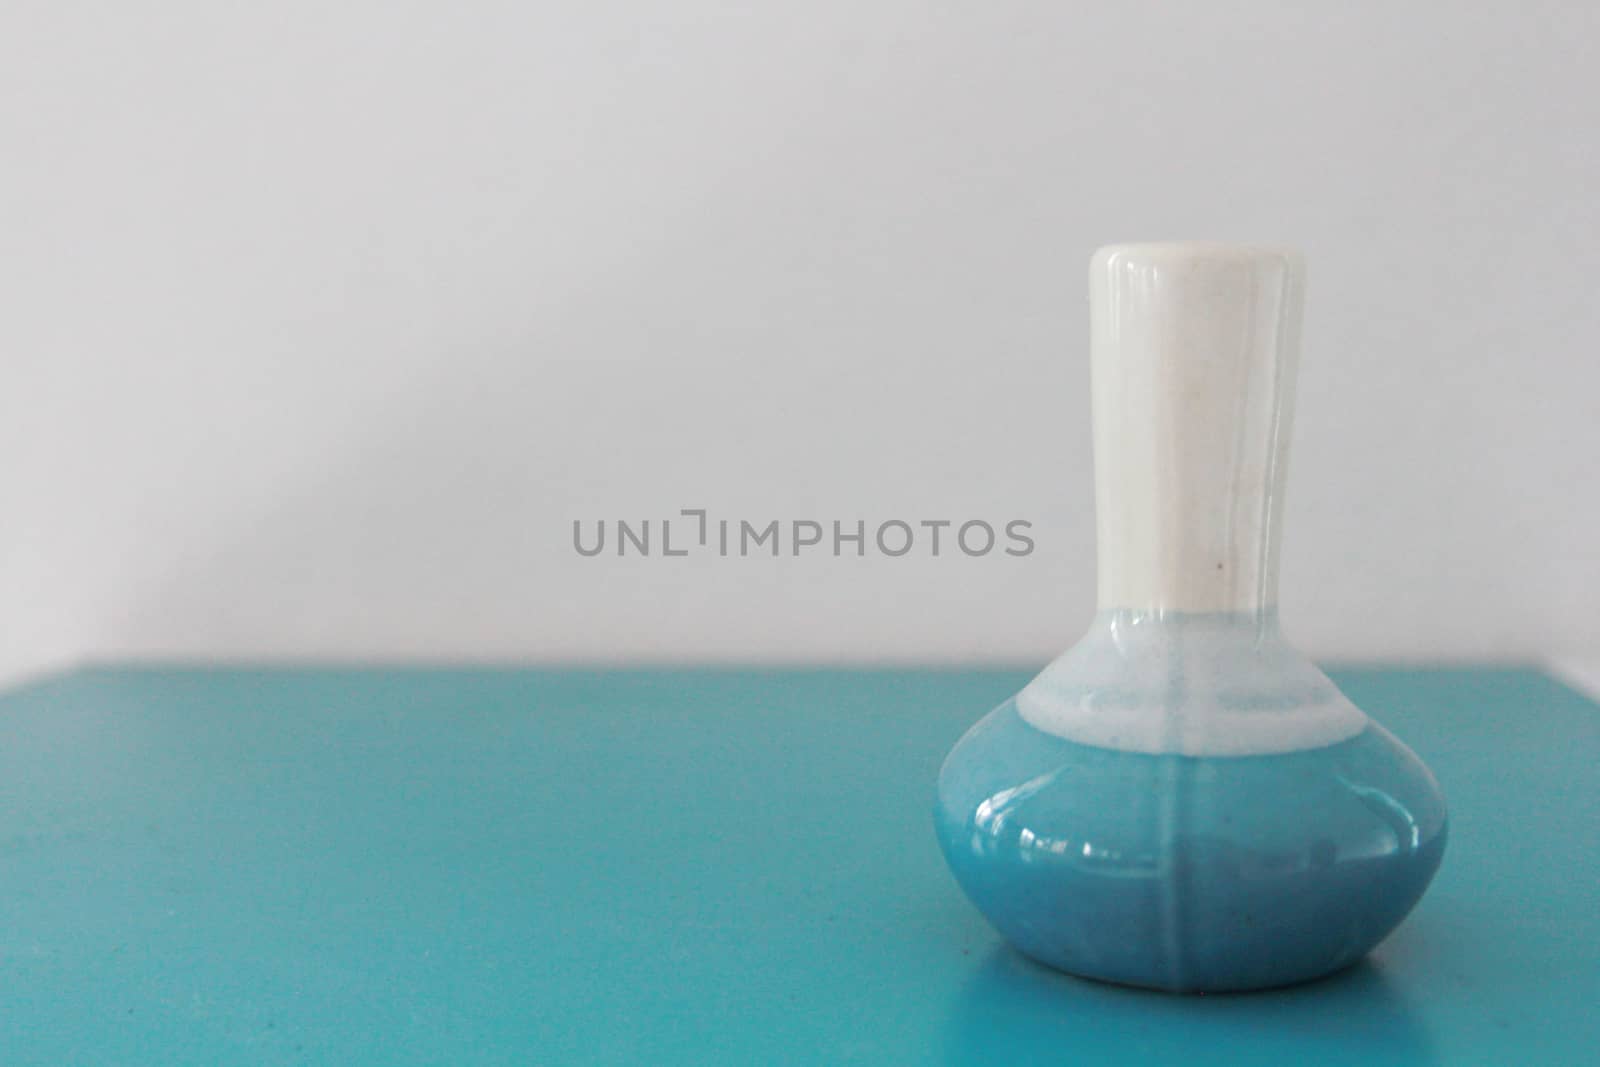 white and blue ceramic vase by kaidevil